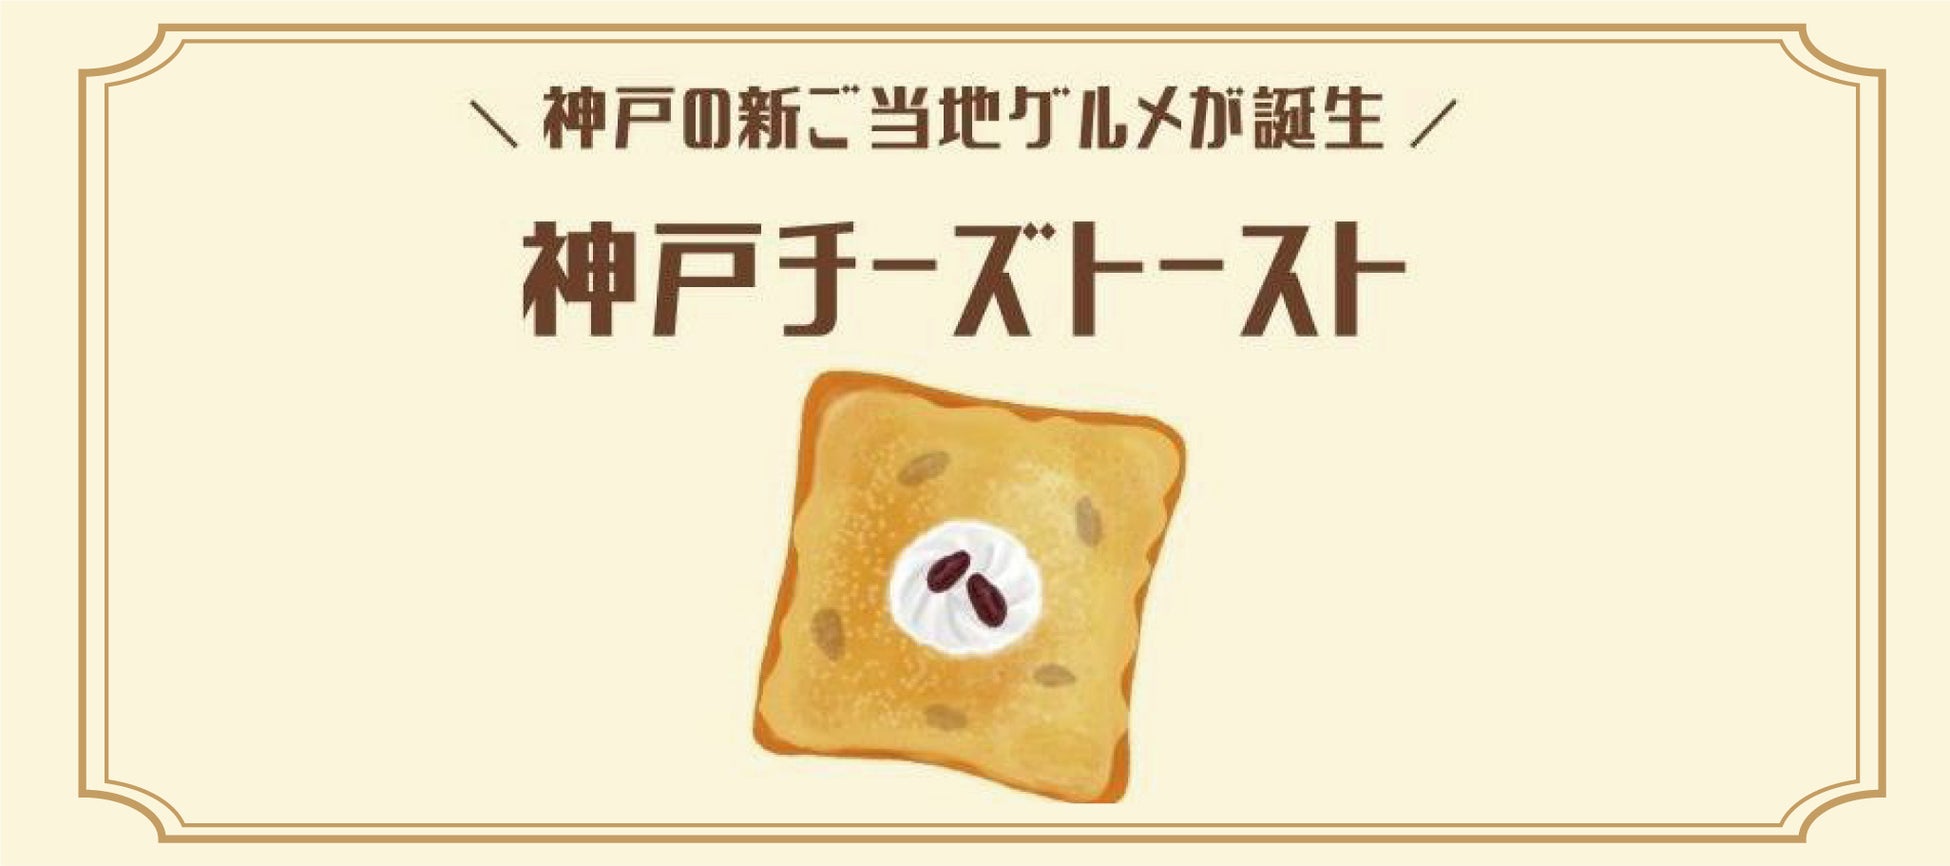 新ご当地グルメ「神戸チーズトースト総選挙」 結果発表選ばれたのは“酒粕チーズトースト”